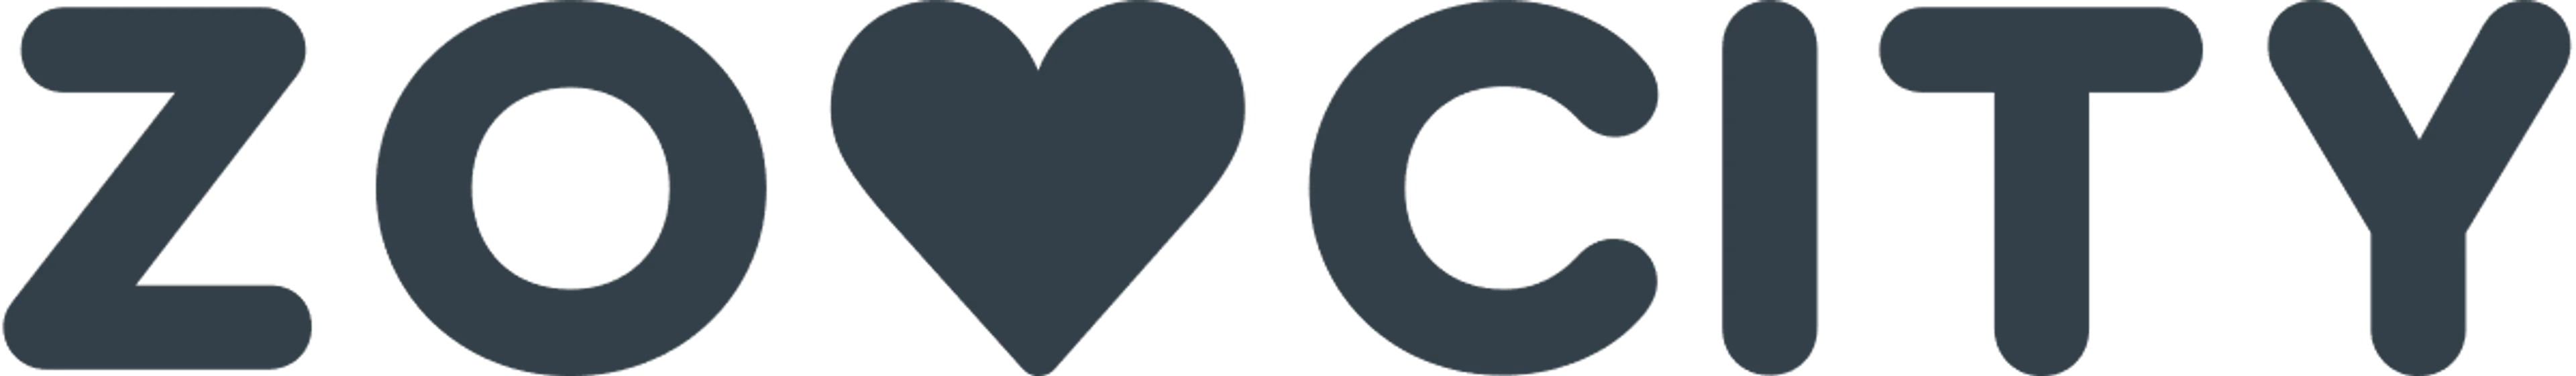 ZOO CITY logo